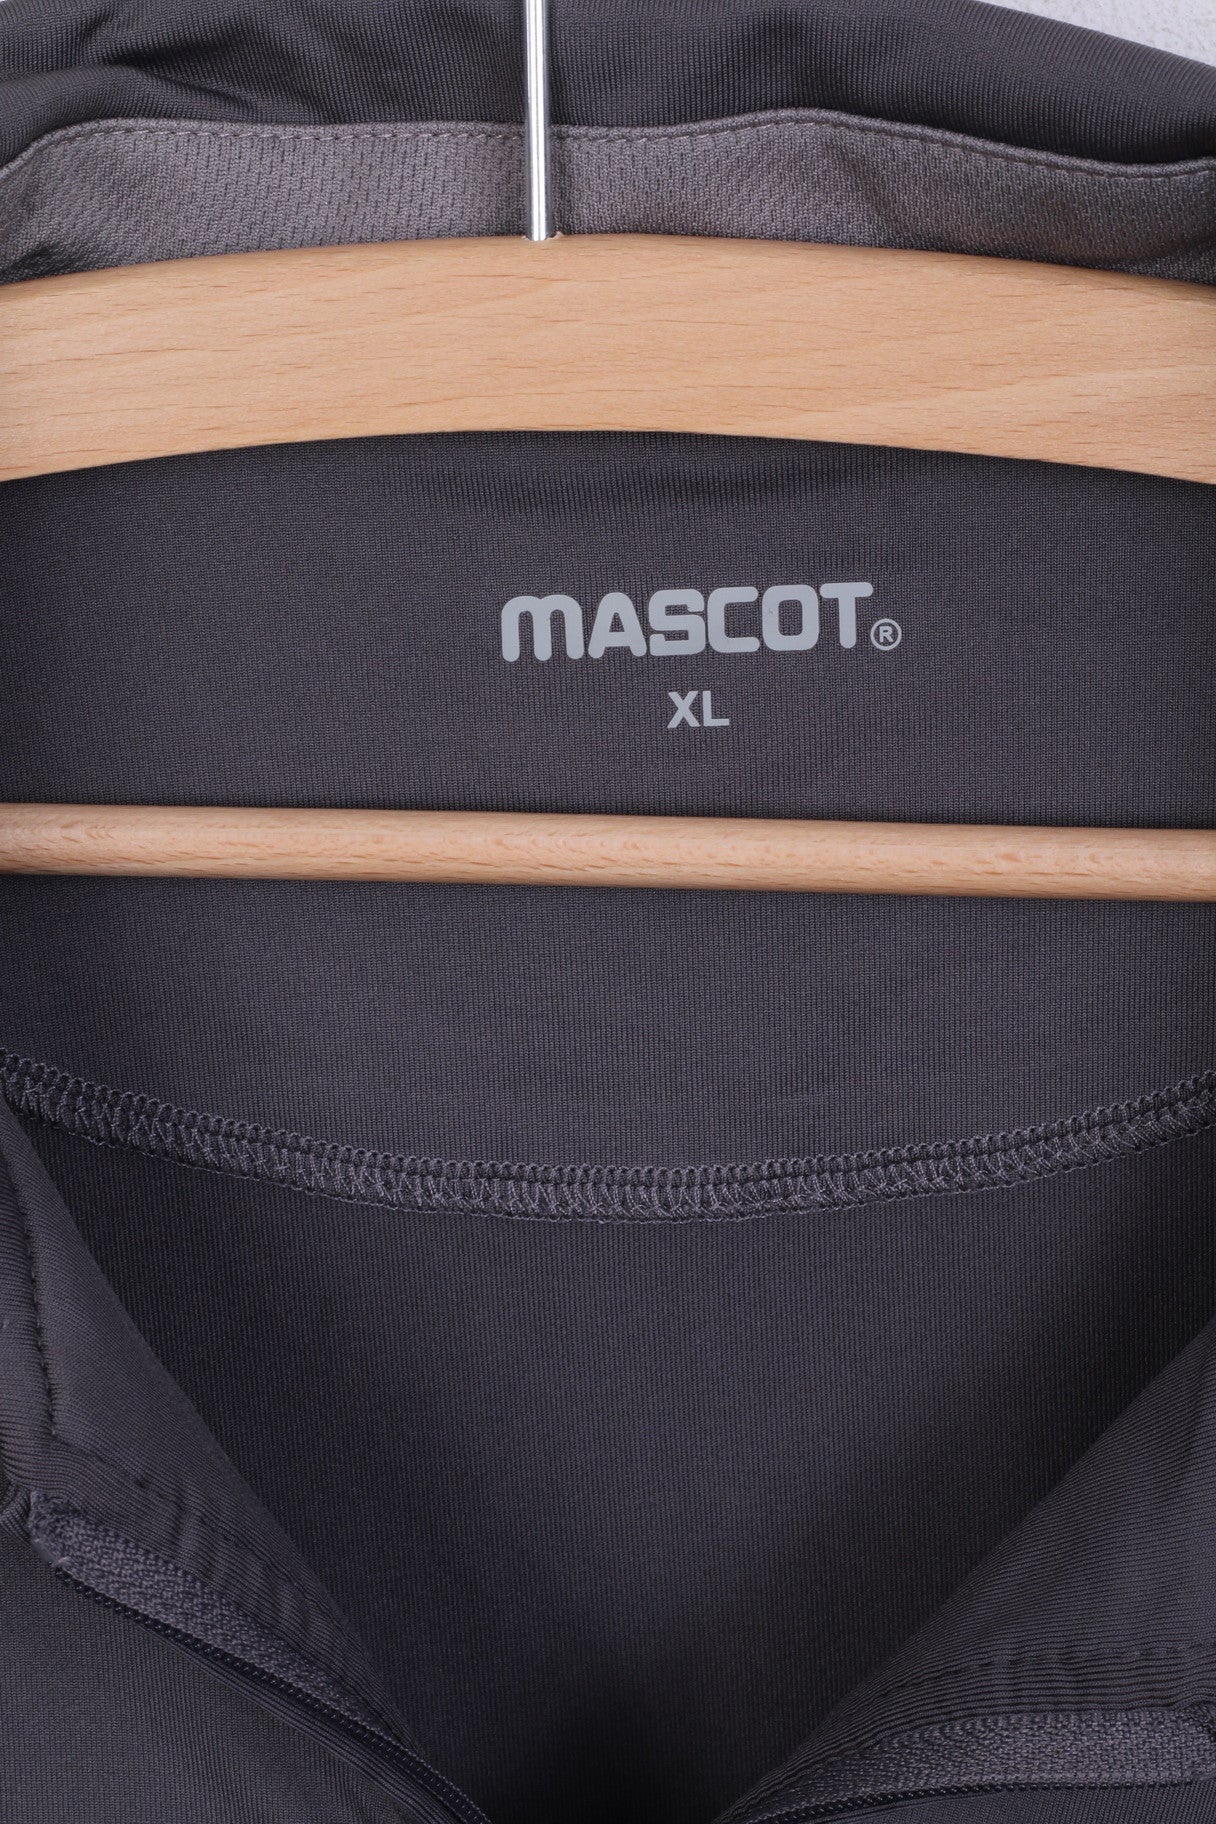 MASCOT Polo XL pour homme Gris Col zippé Manches courtes